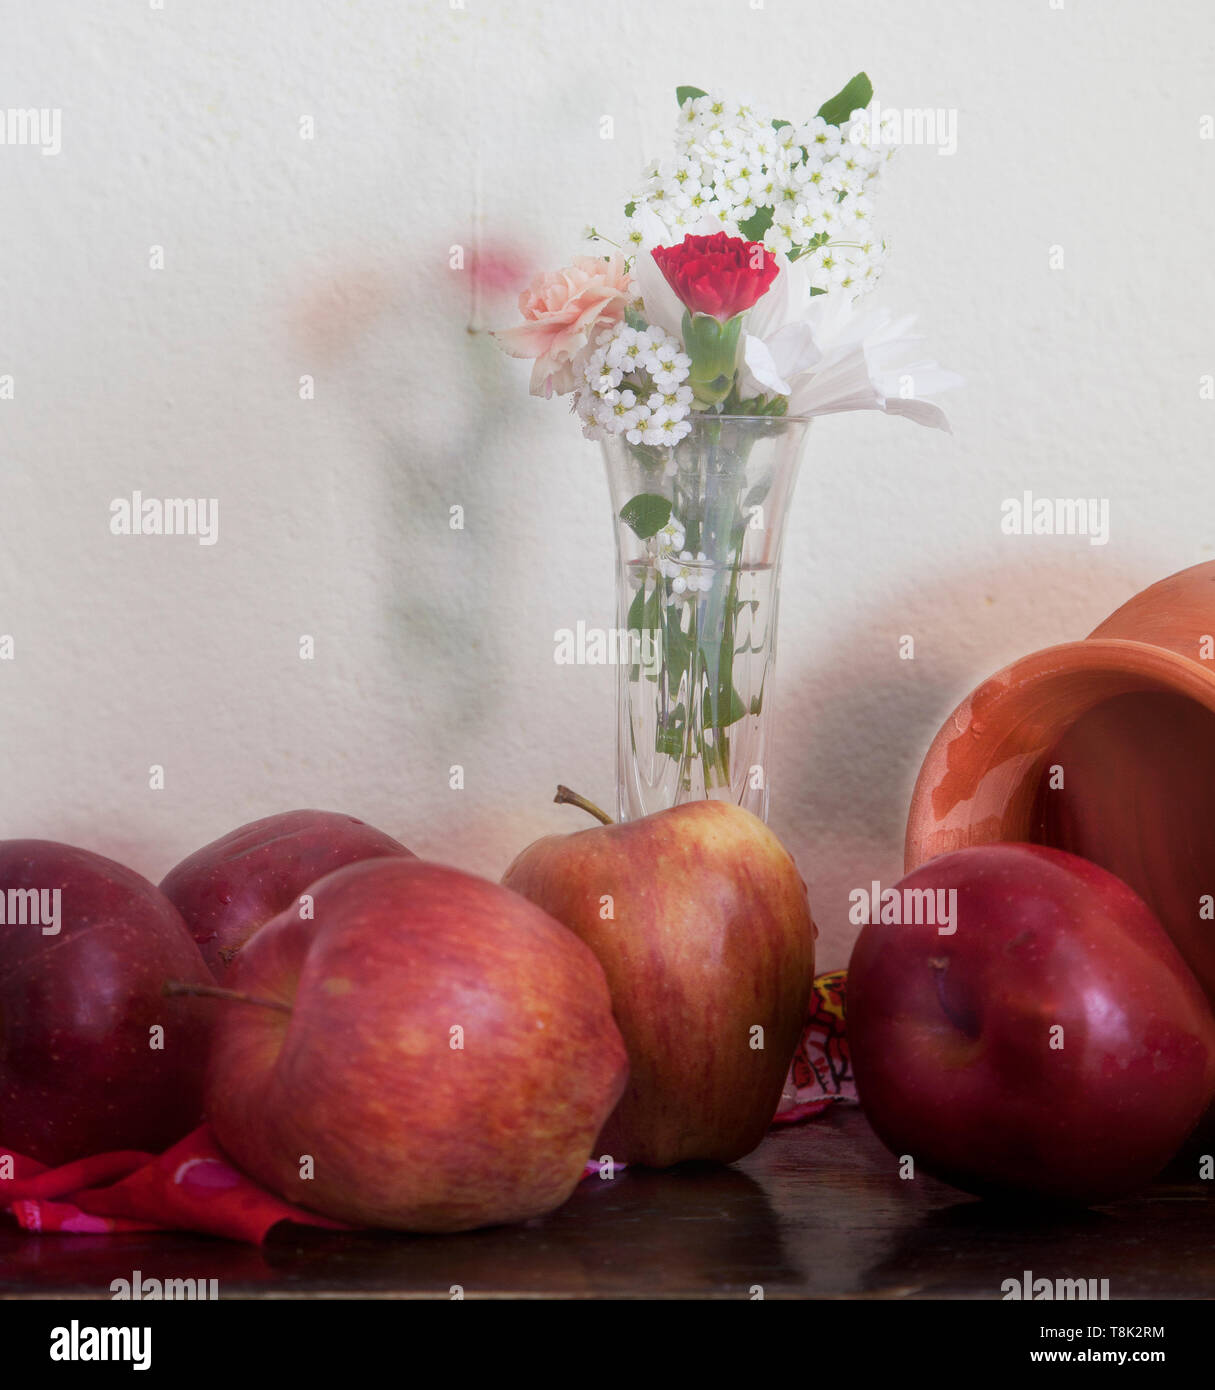 Flores y frutos en la tabla anterior. Still life Foto de stock